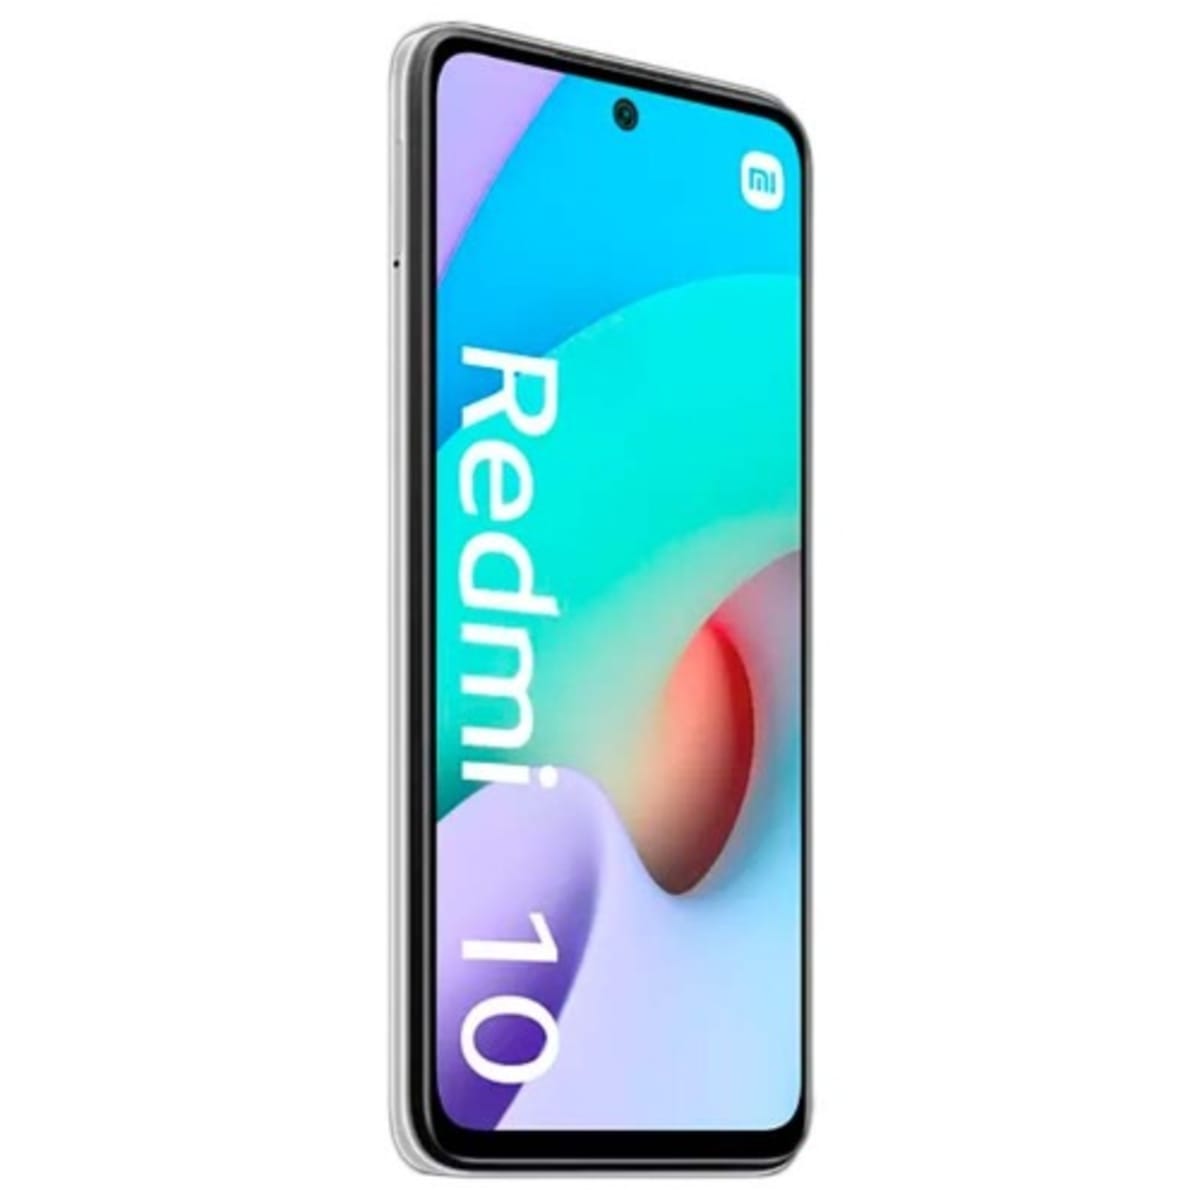 Xiaomi Redmi 10 2022 LTE Smartphone